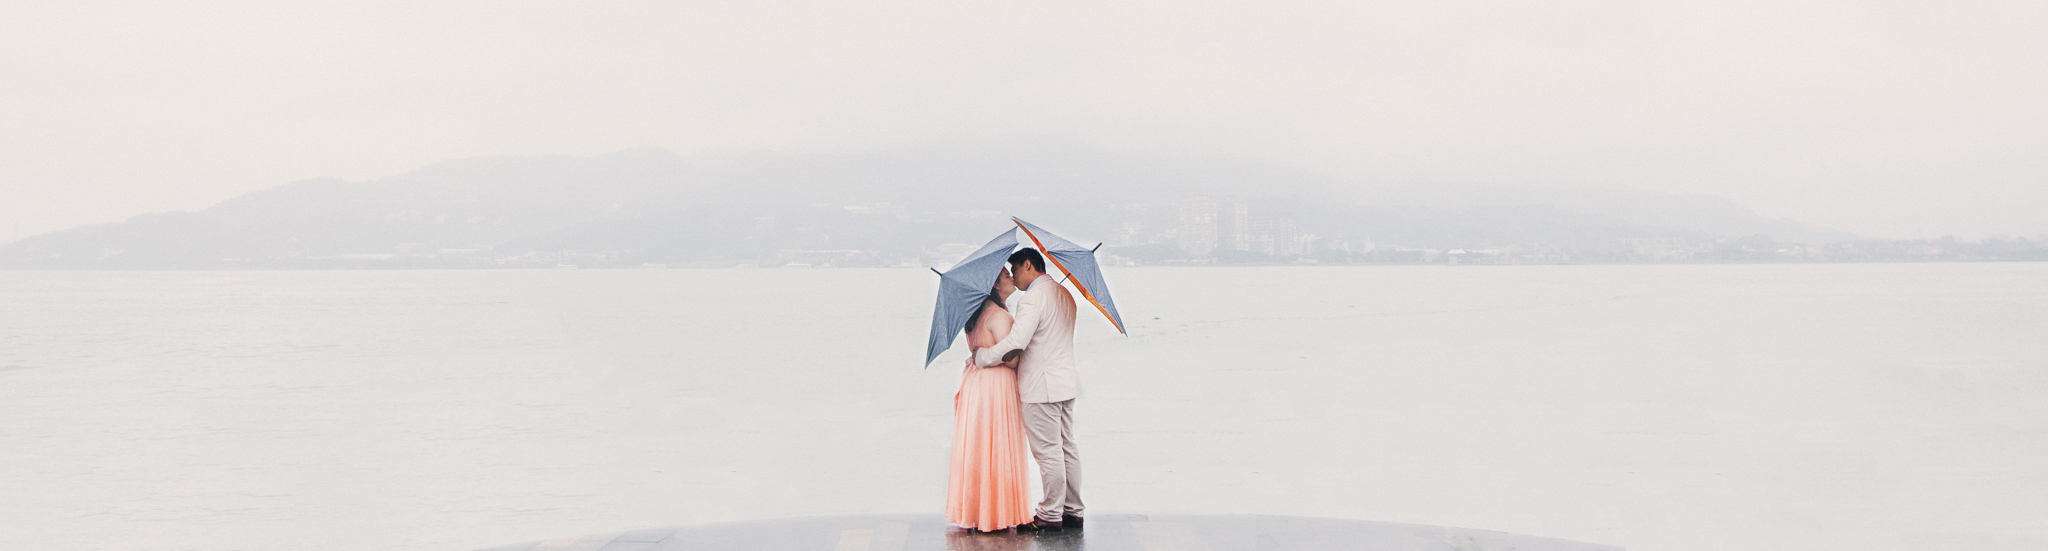 Vincent and Roshana under umbrellas in the rain overlooking Dangshui